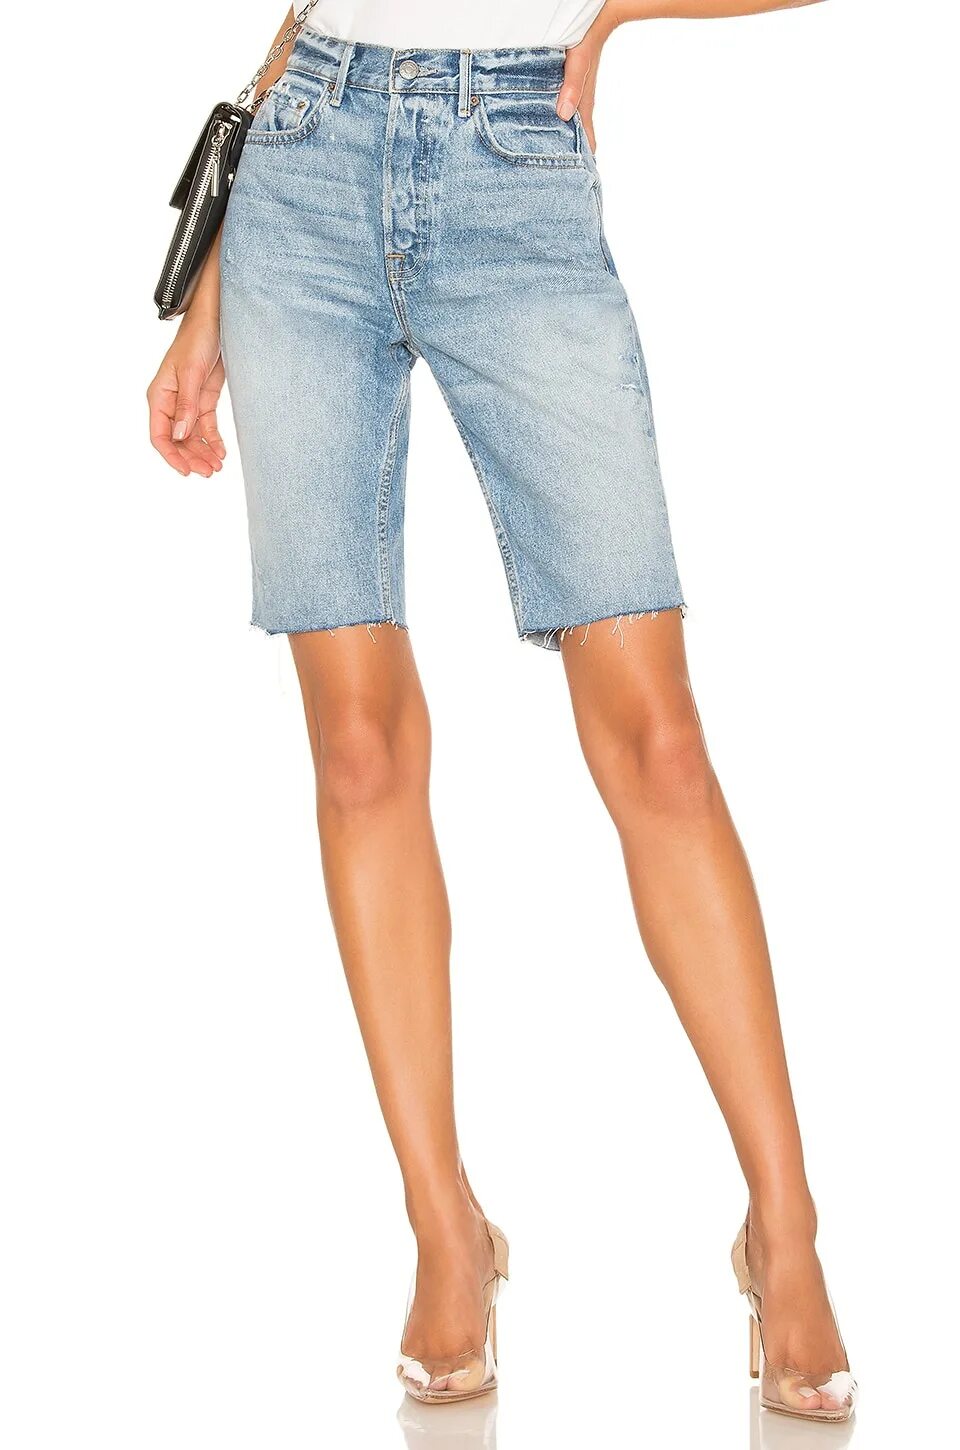 Шорты джинсовые женские длинные. Джинсовые шорты длинные широкие. Обтянутые удлиненные шорты. Удлиненные джинсовые шорты